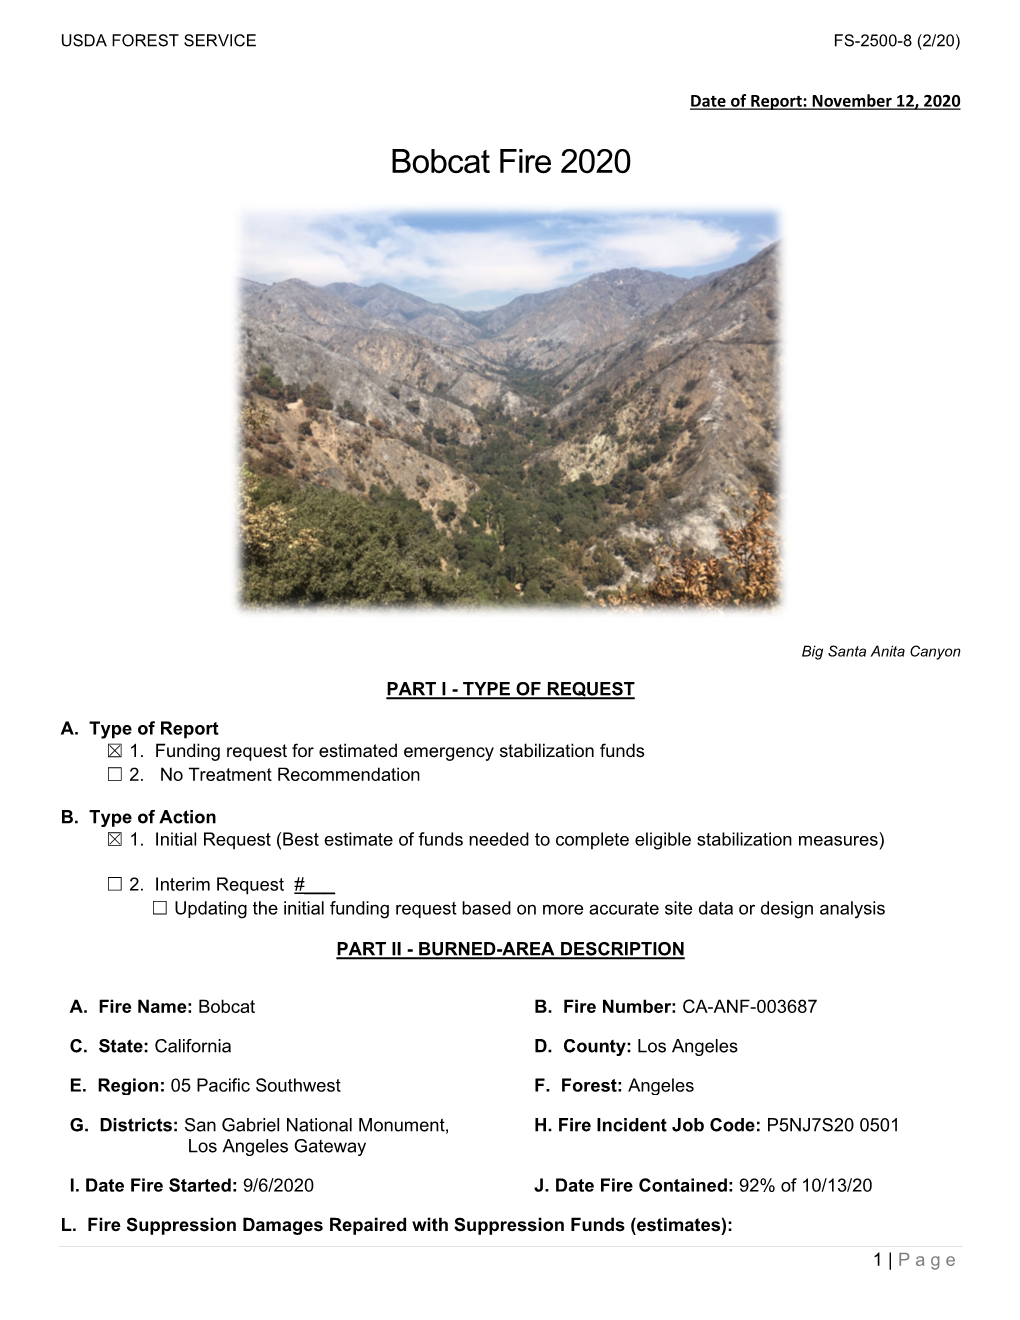 Bobcat Fire 2020